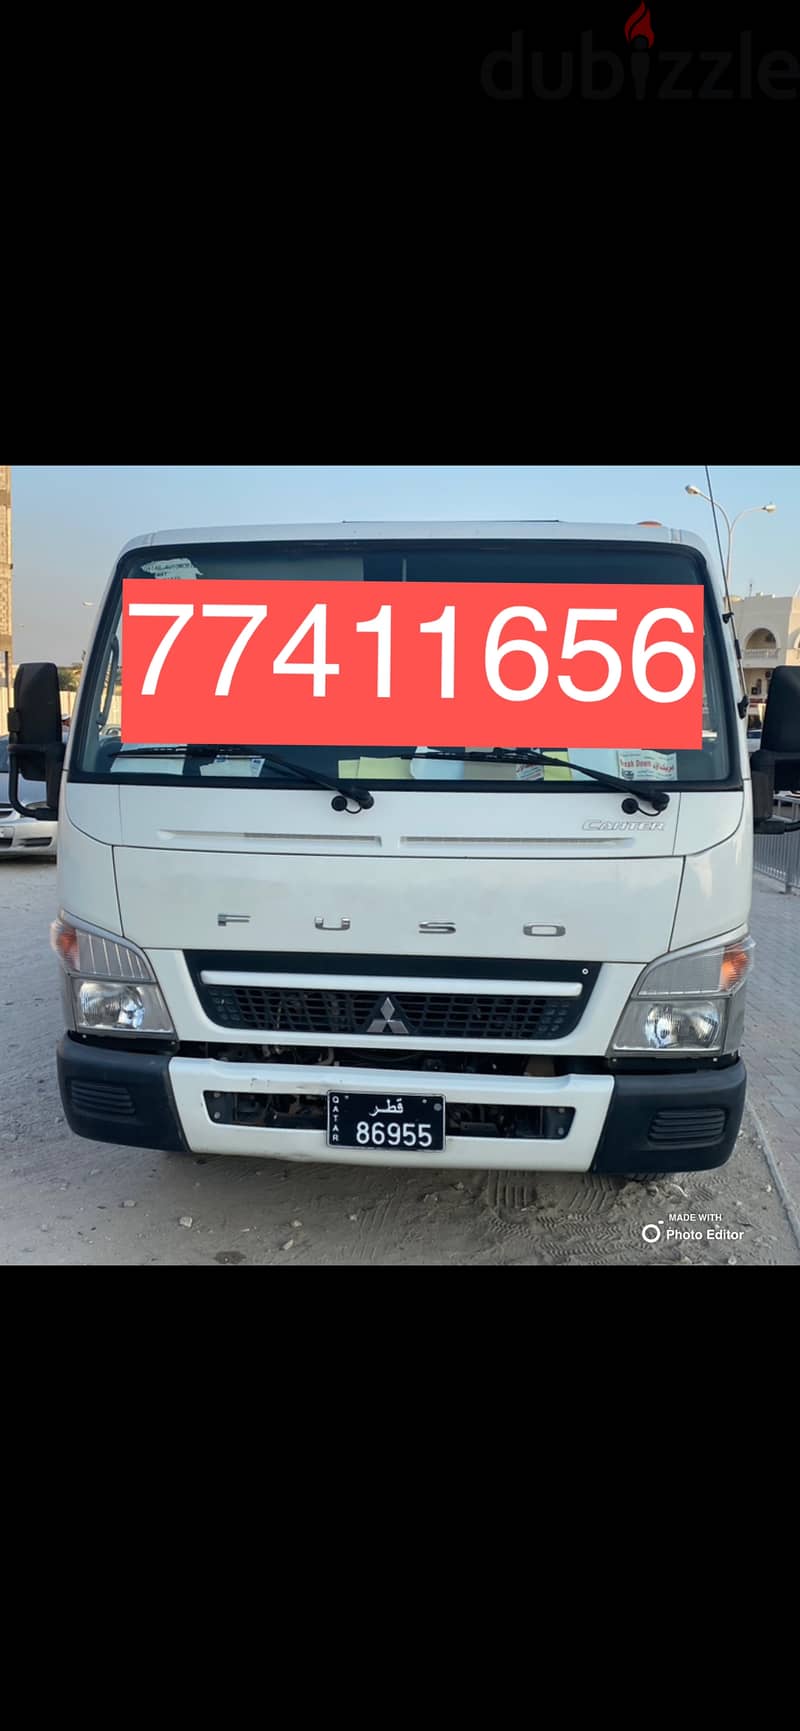 #Breakdown #Recovery#Pearl Qatar 77411656 #Tow truck #Pearl Qatar 0